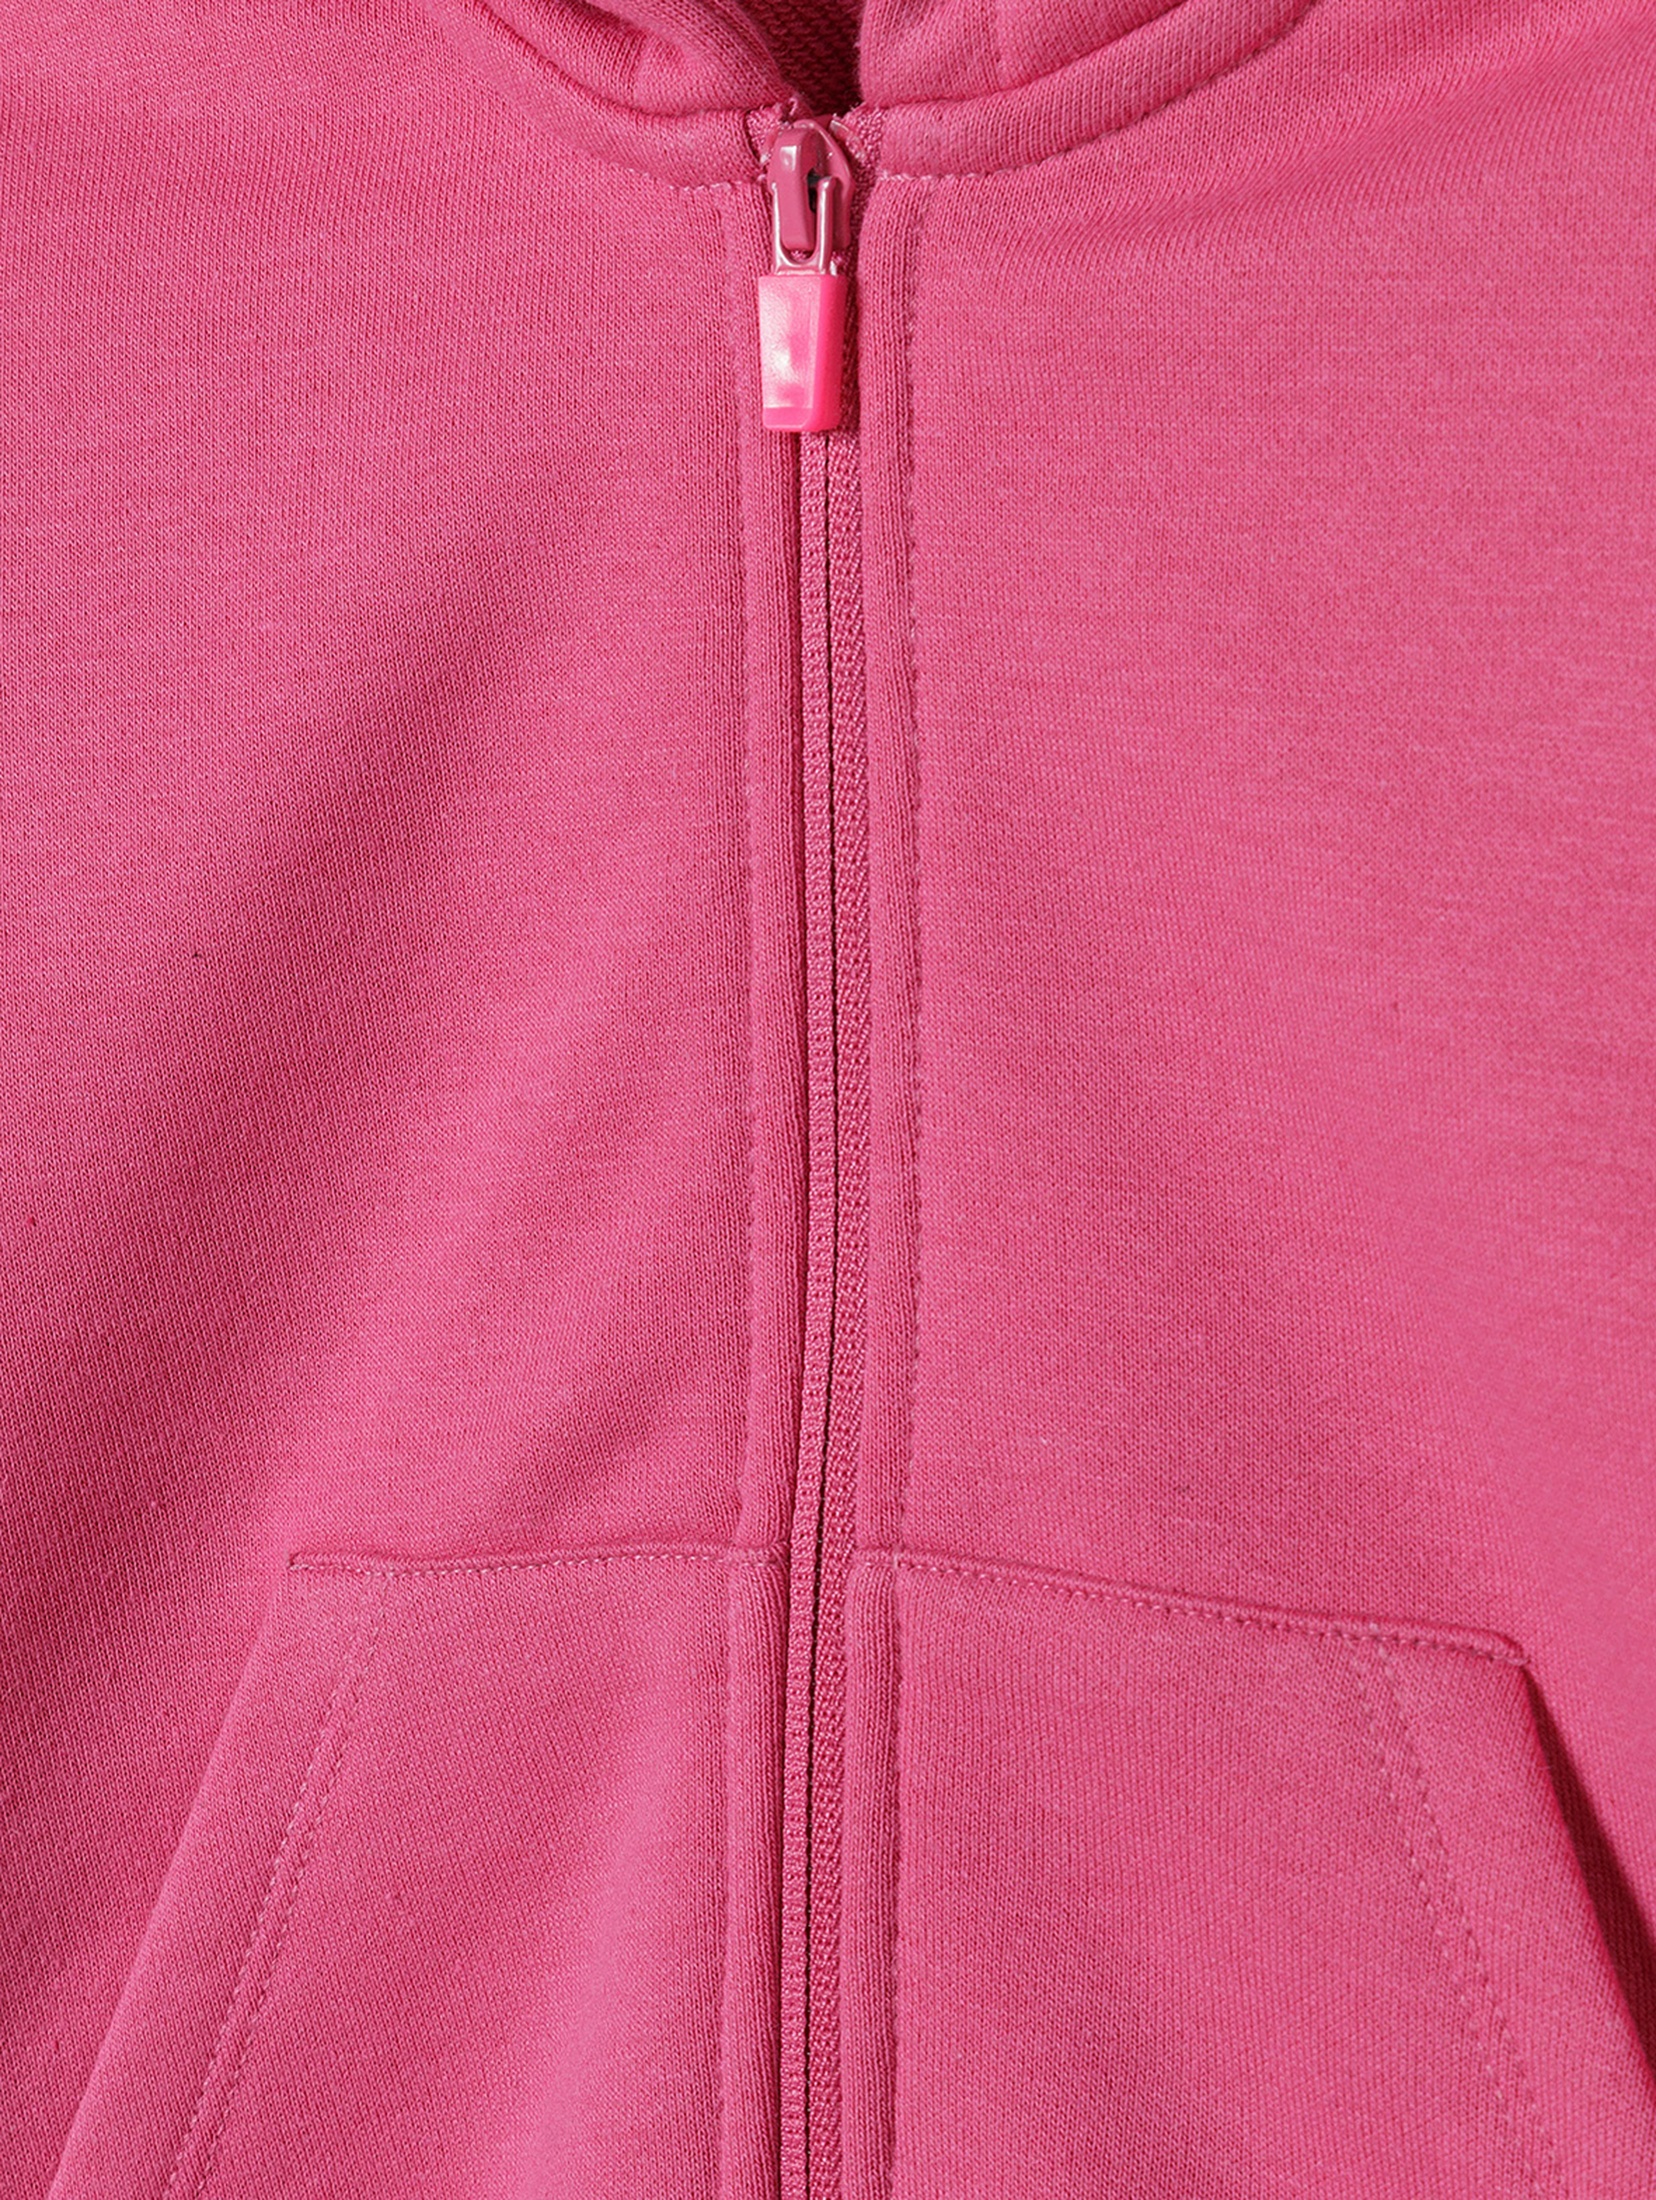 Różowa bluza dresowa rozpinana dla dziewczynki z paskami